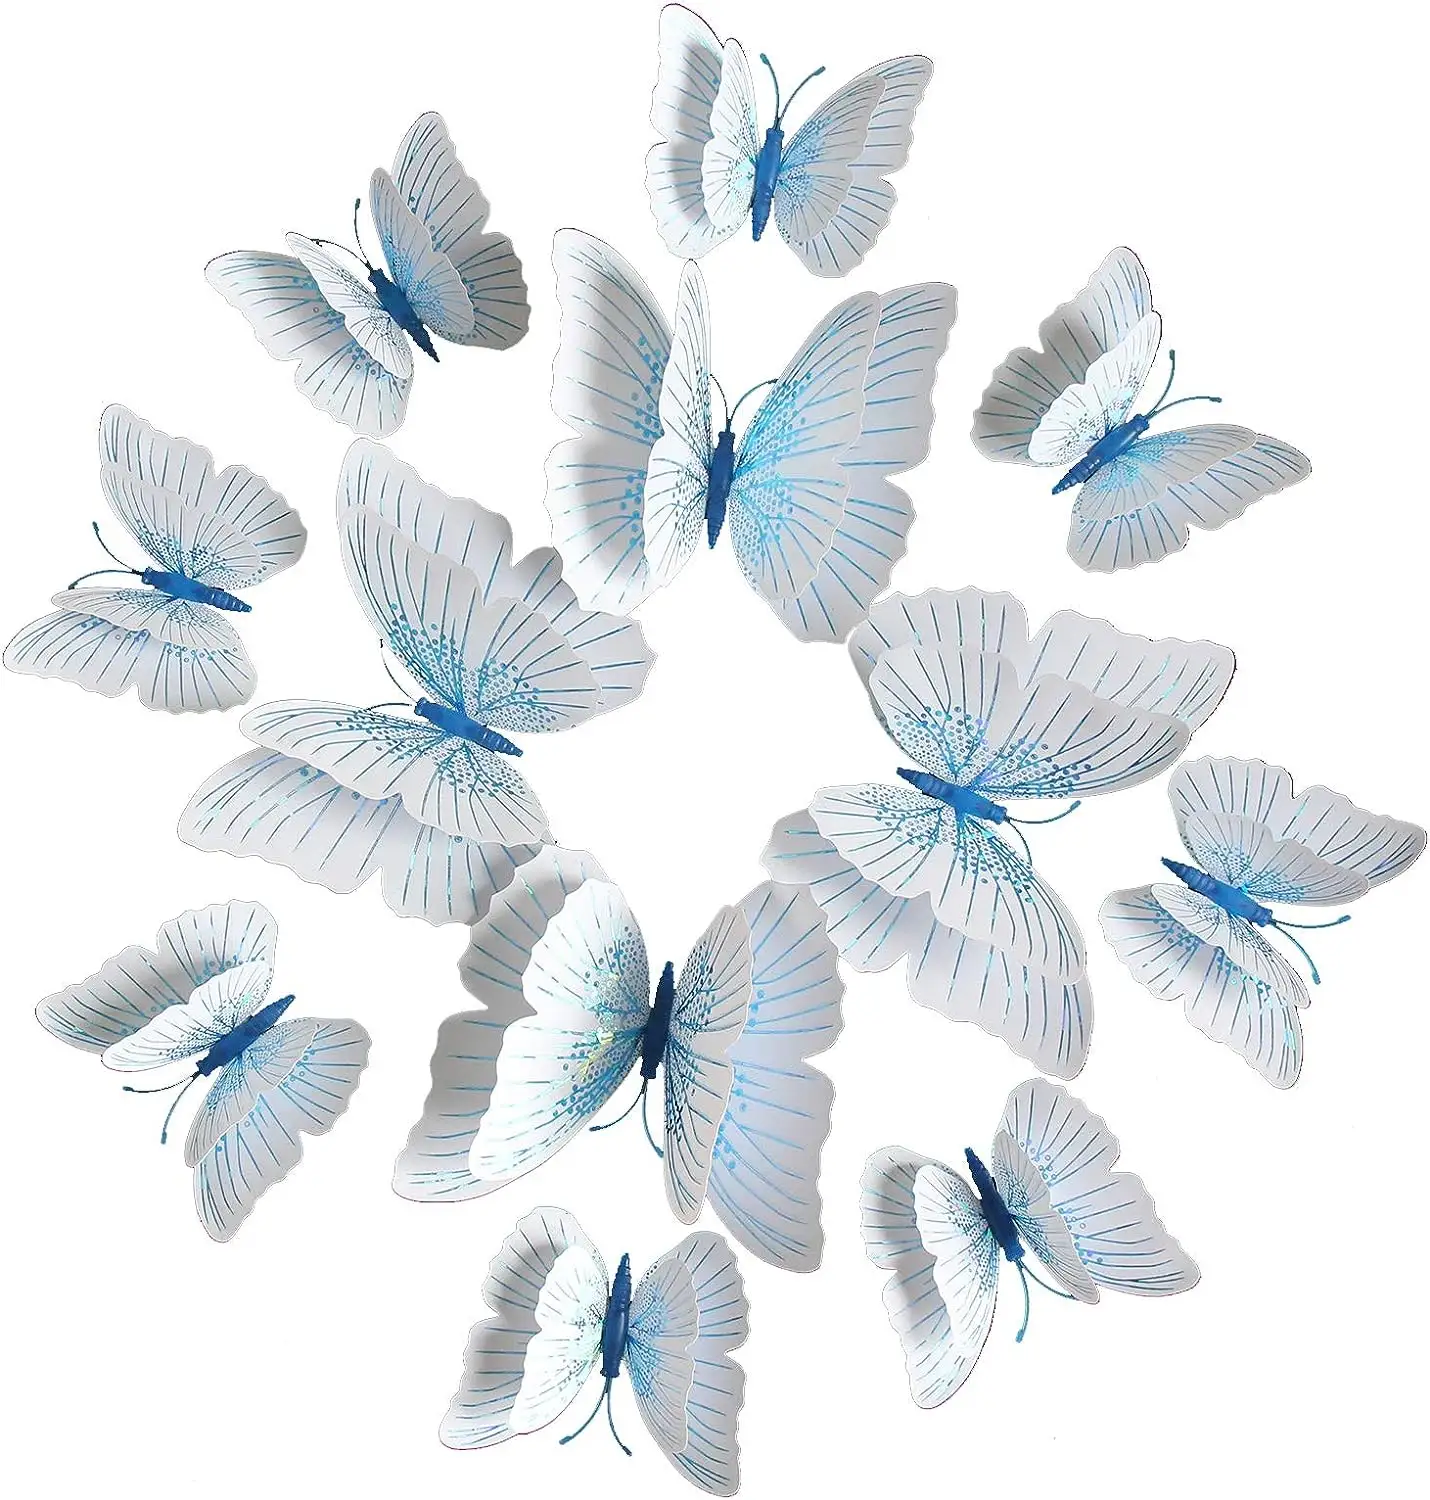 7 ألوان لامعة الكريستال الفراشات زخارف جدار الزفاف 12: فراشة بلاستيكية ثلاثية الأبعاد